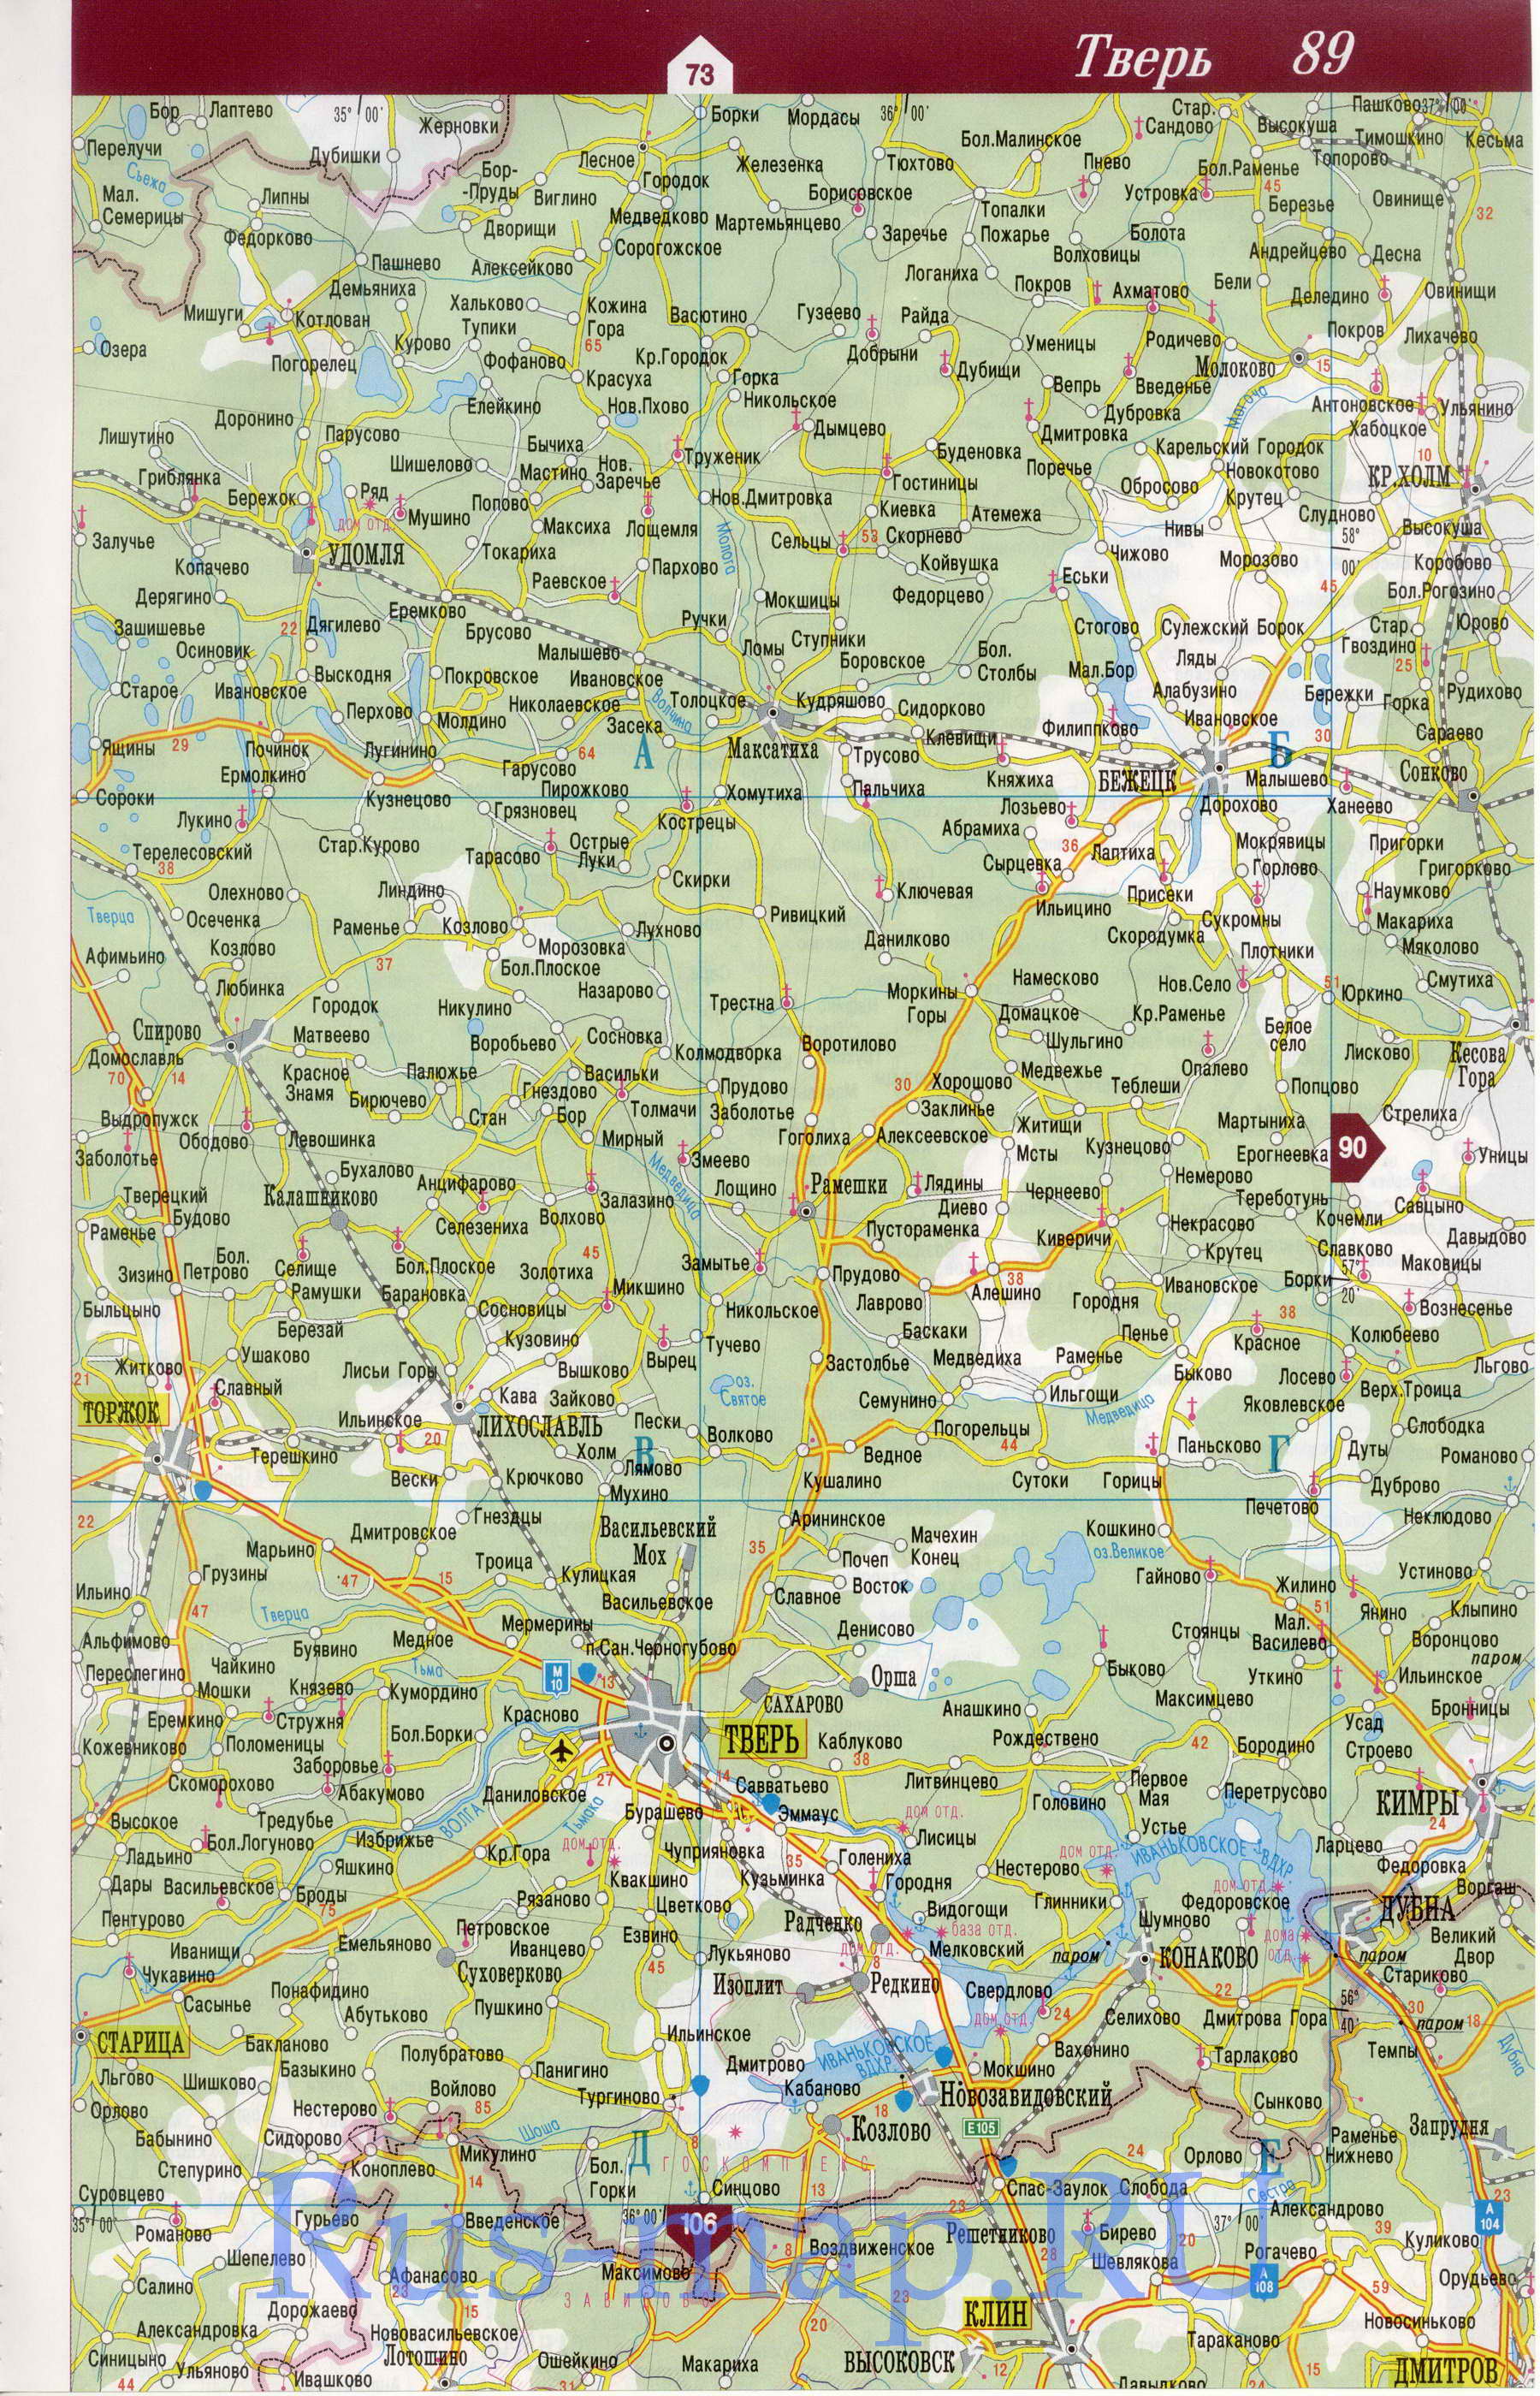 Карта Тверской области 2010 года. Карта Тверской области из атласа дорог России, C0 - 